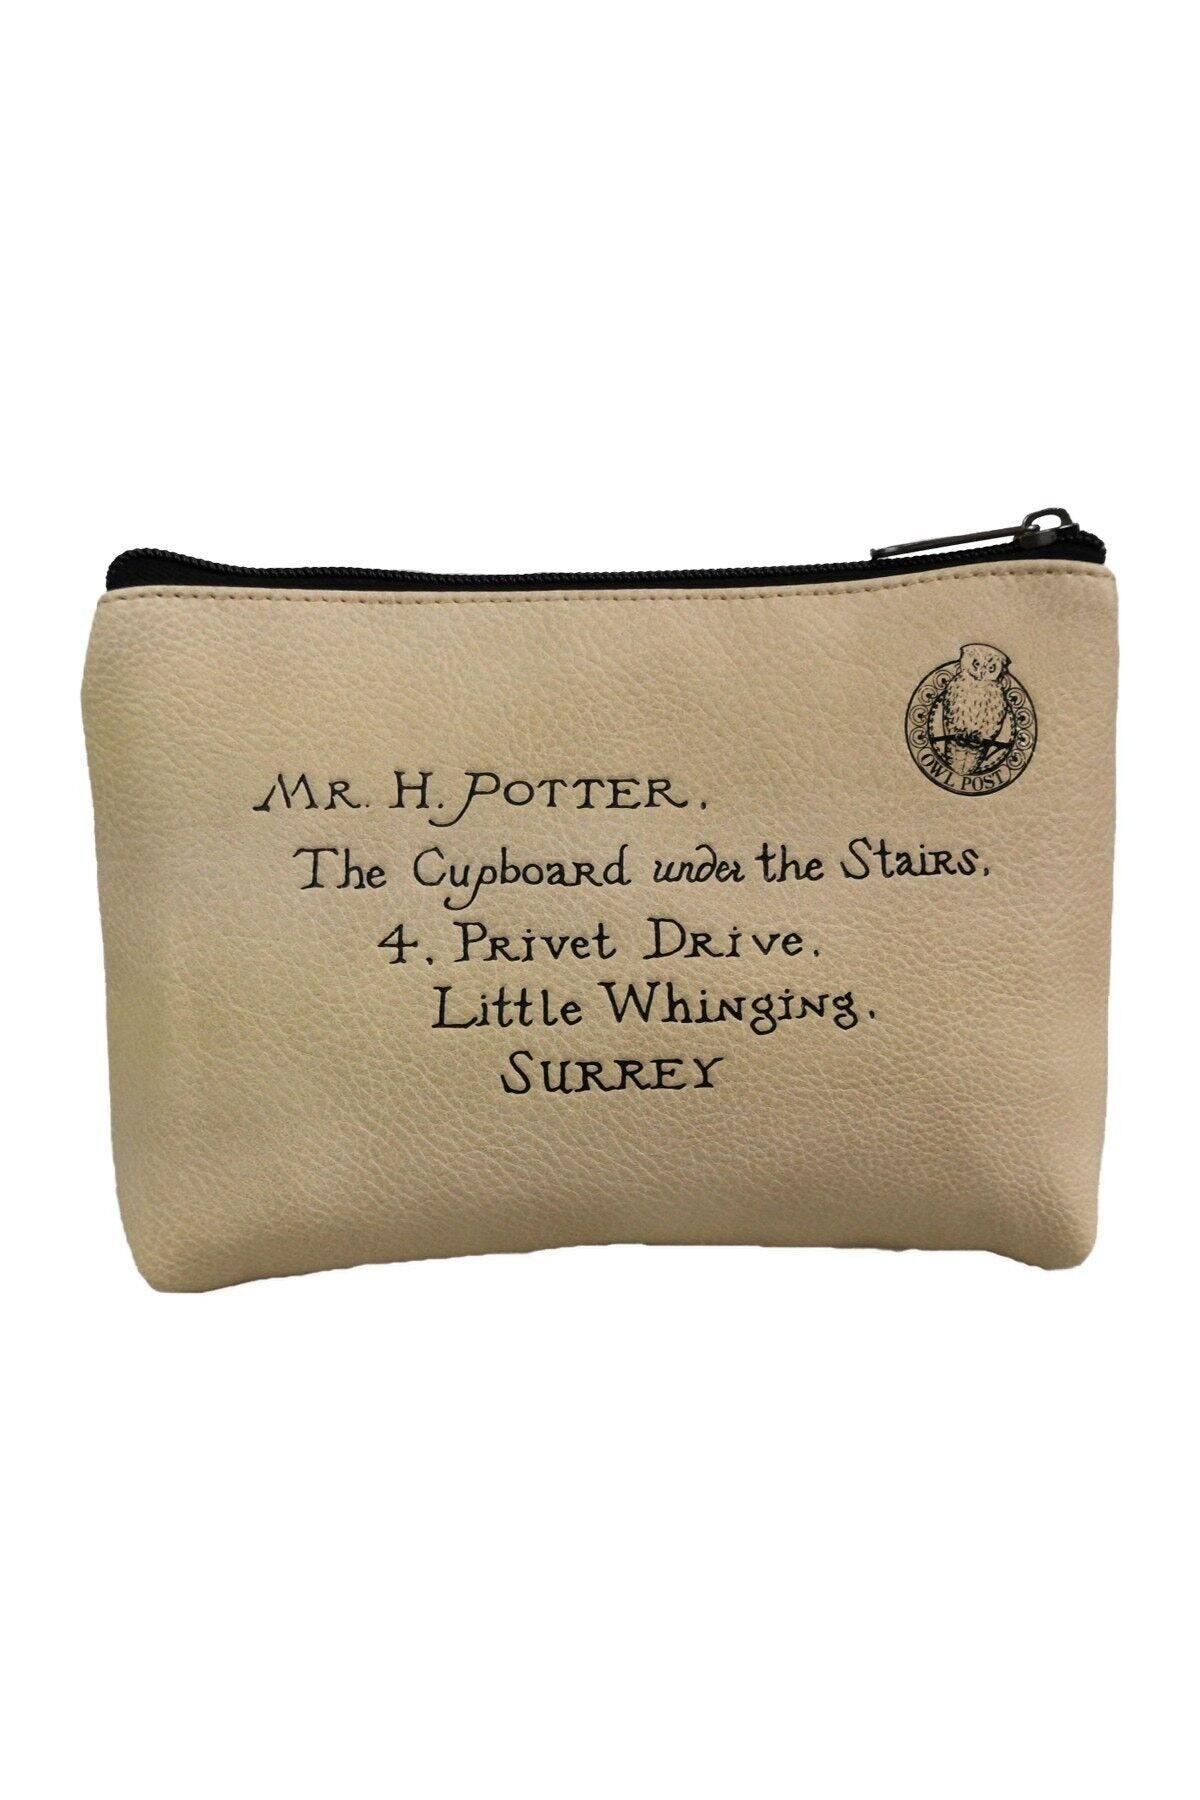 Harry Potter Hedwig Hogwarts Letter Mini Backpack - Brand New Rare & Wallet  | eBay